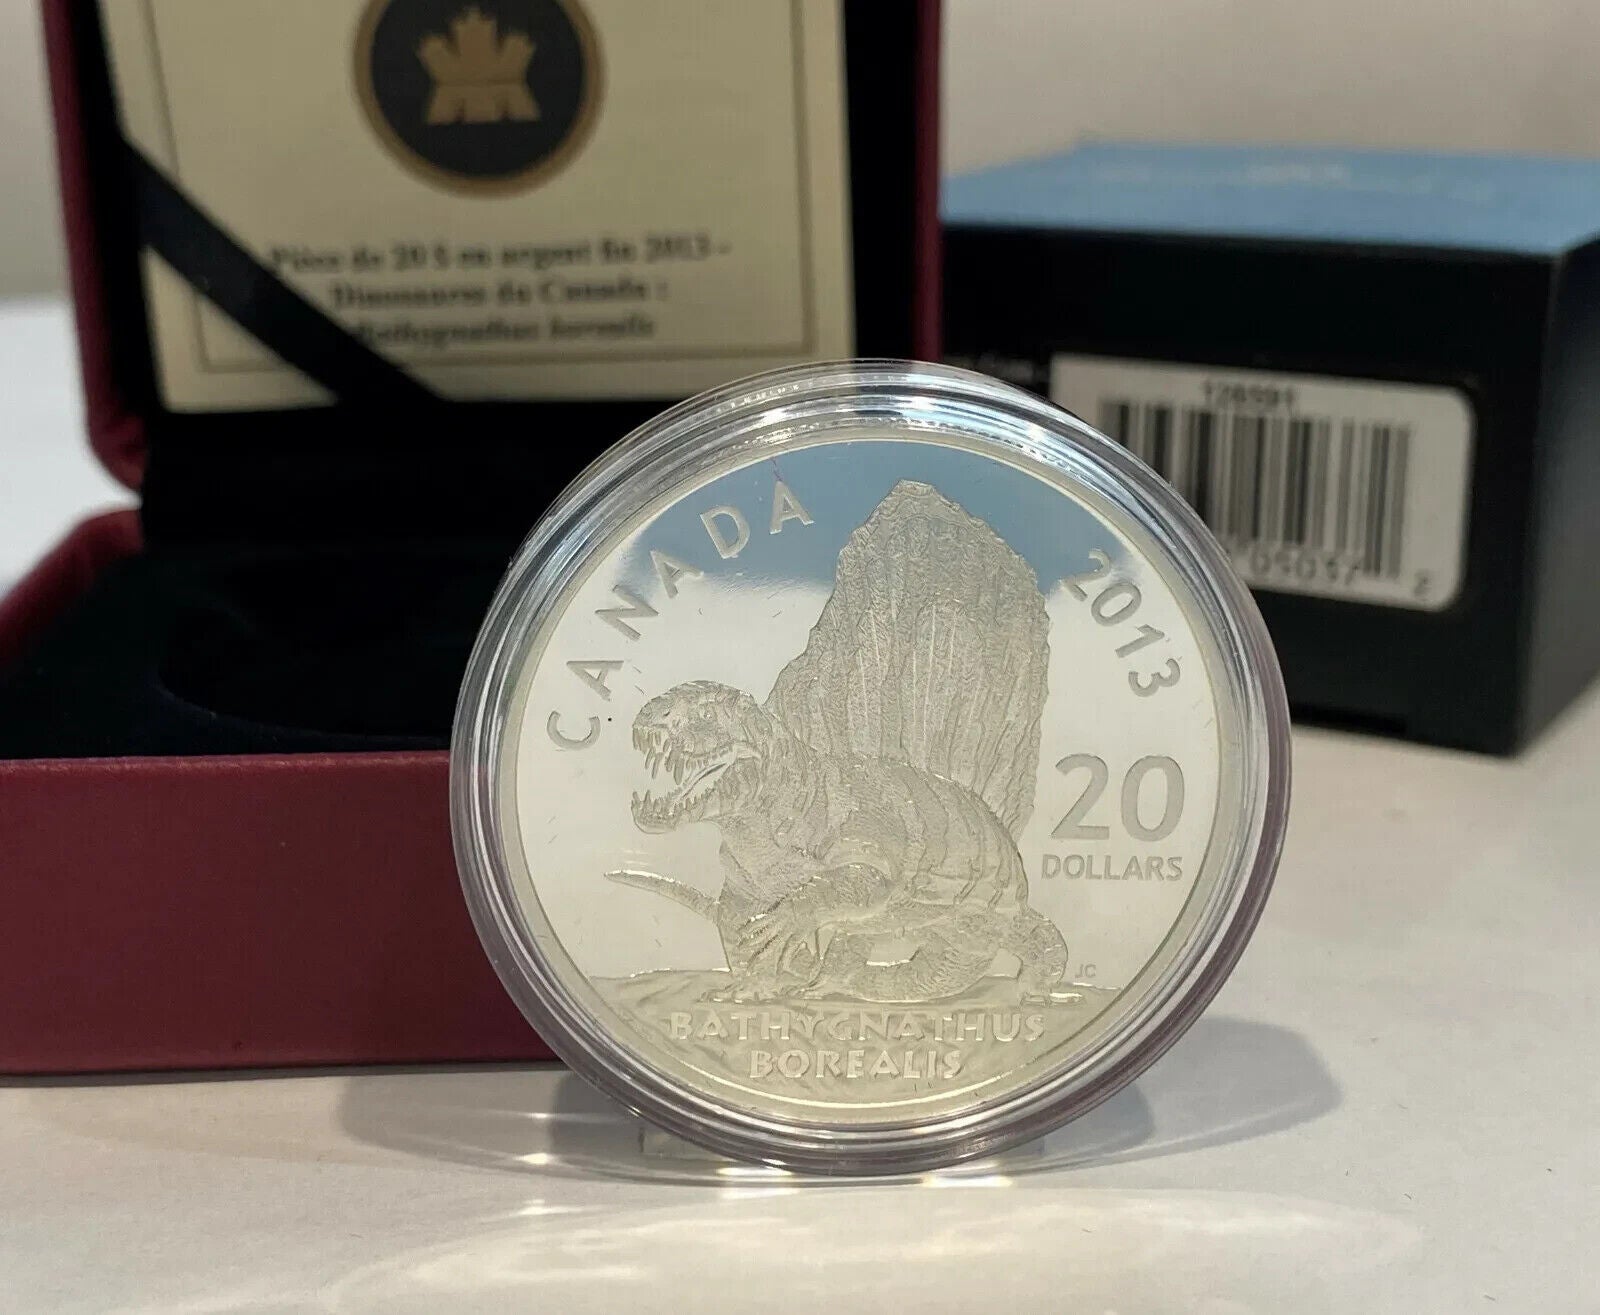 1 Oz Silver Coin 2013 Canada $20 Canadian Dinosaurs Bathygnathus Borealis-classypw.com-3